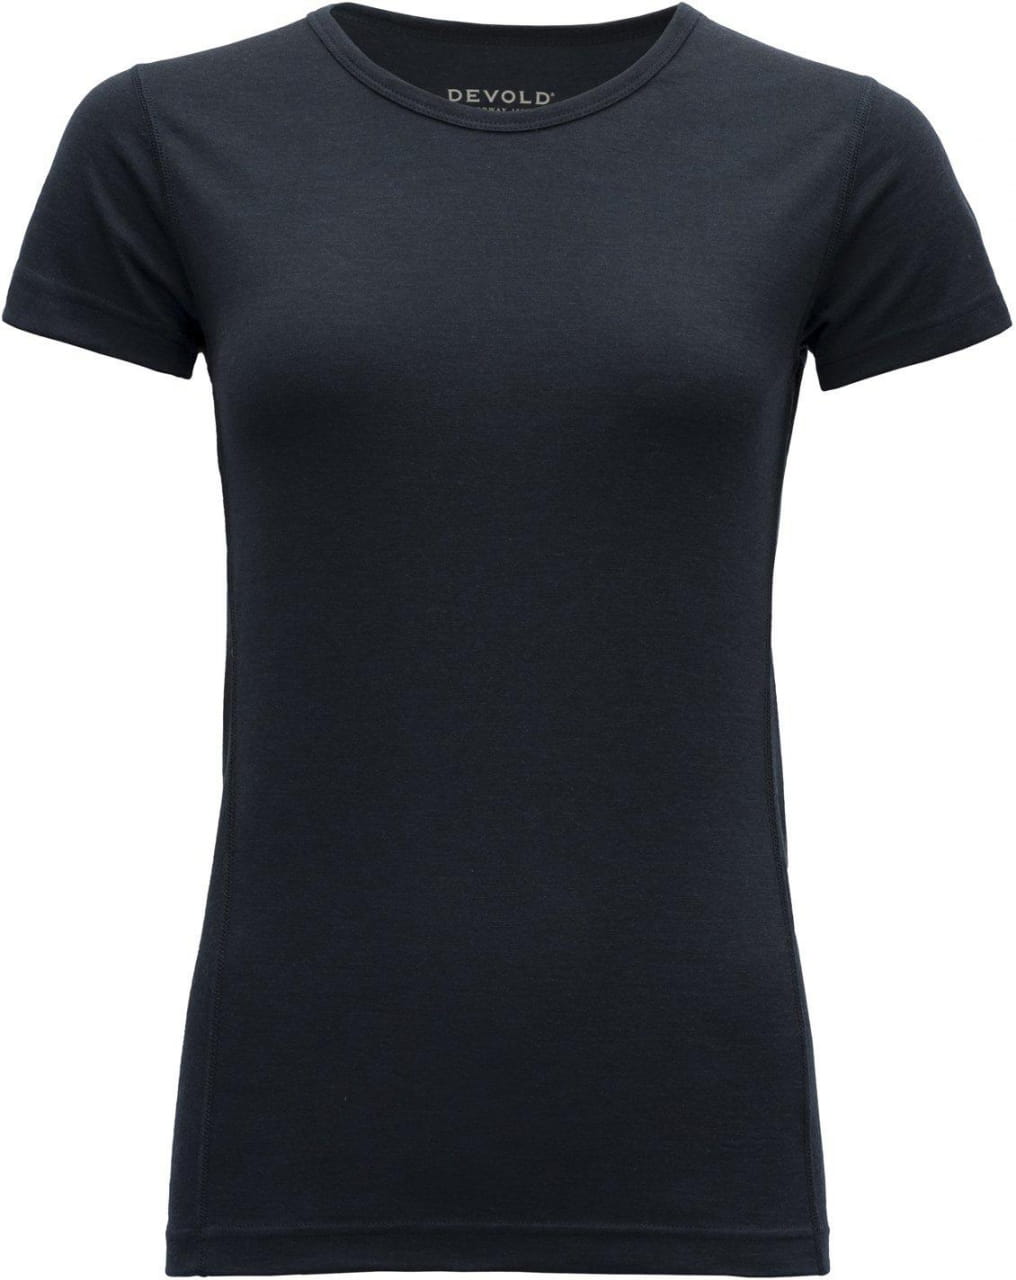 Damska wełniana koszula turystyczna Devold Breeze Woman T-Shirt